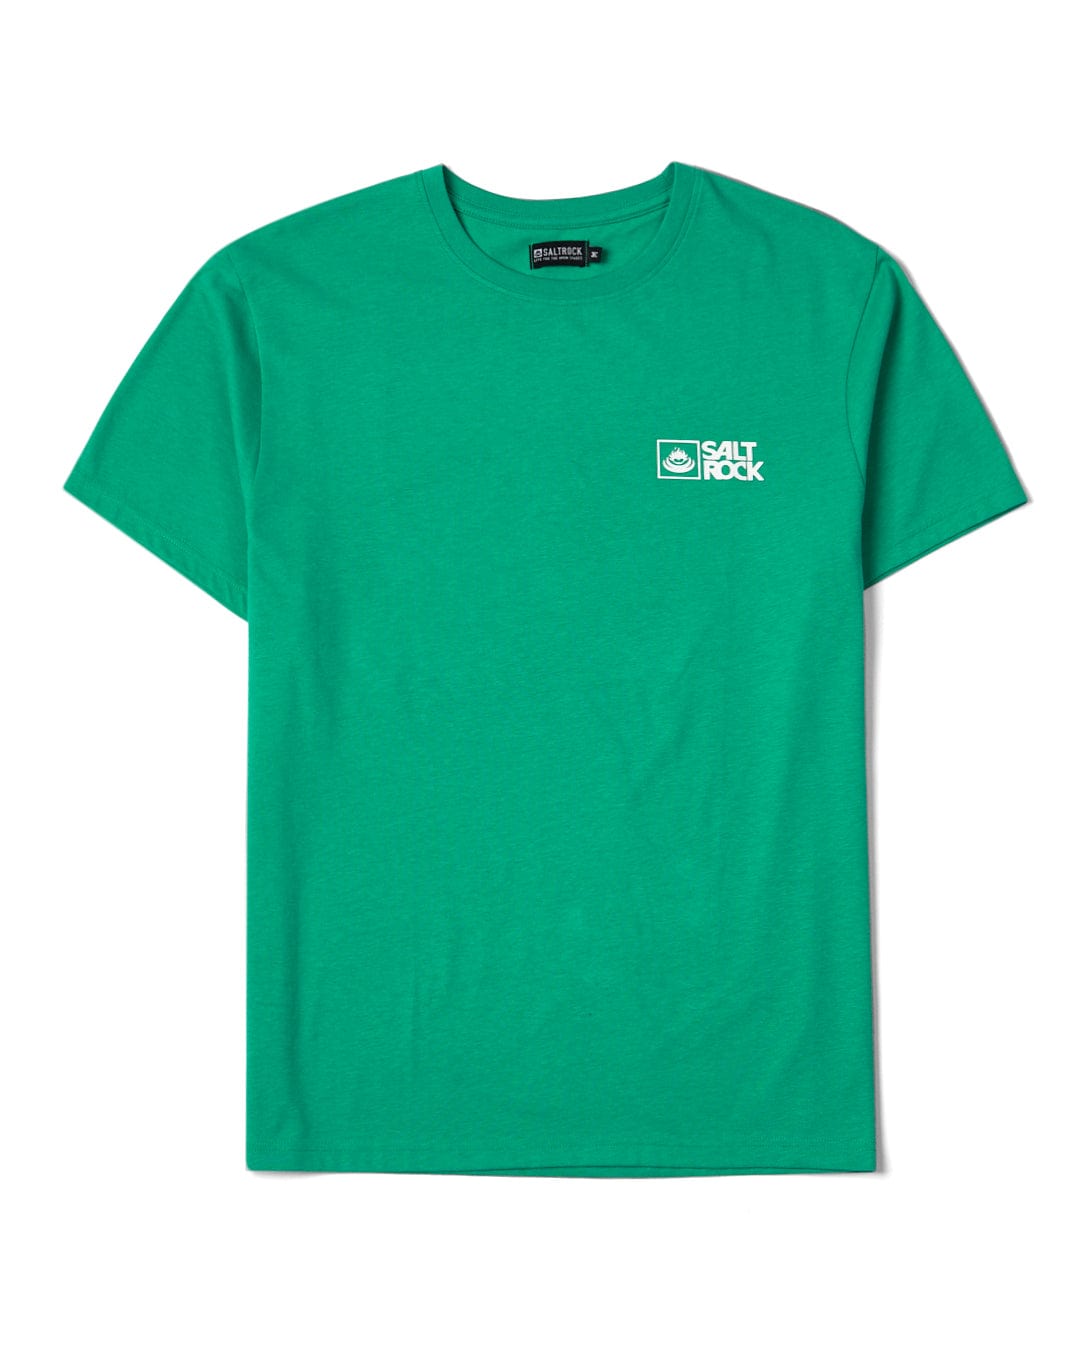 Saltrock Original - Mens Short Sleeve T-Shirt - Green, Green / XXL